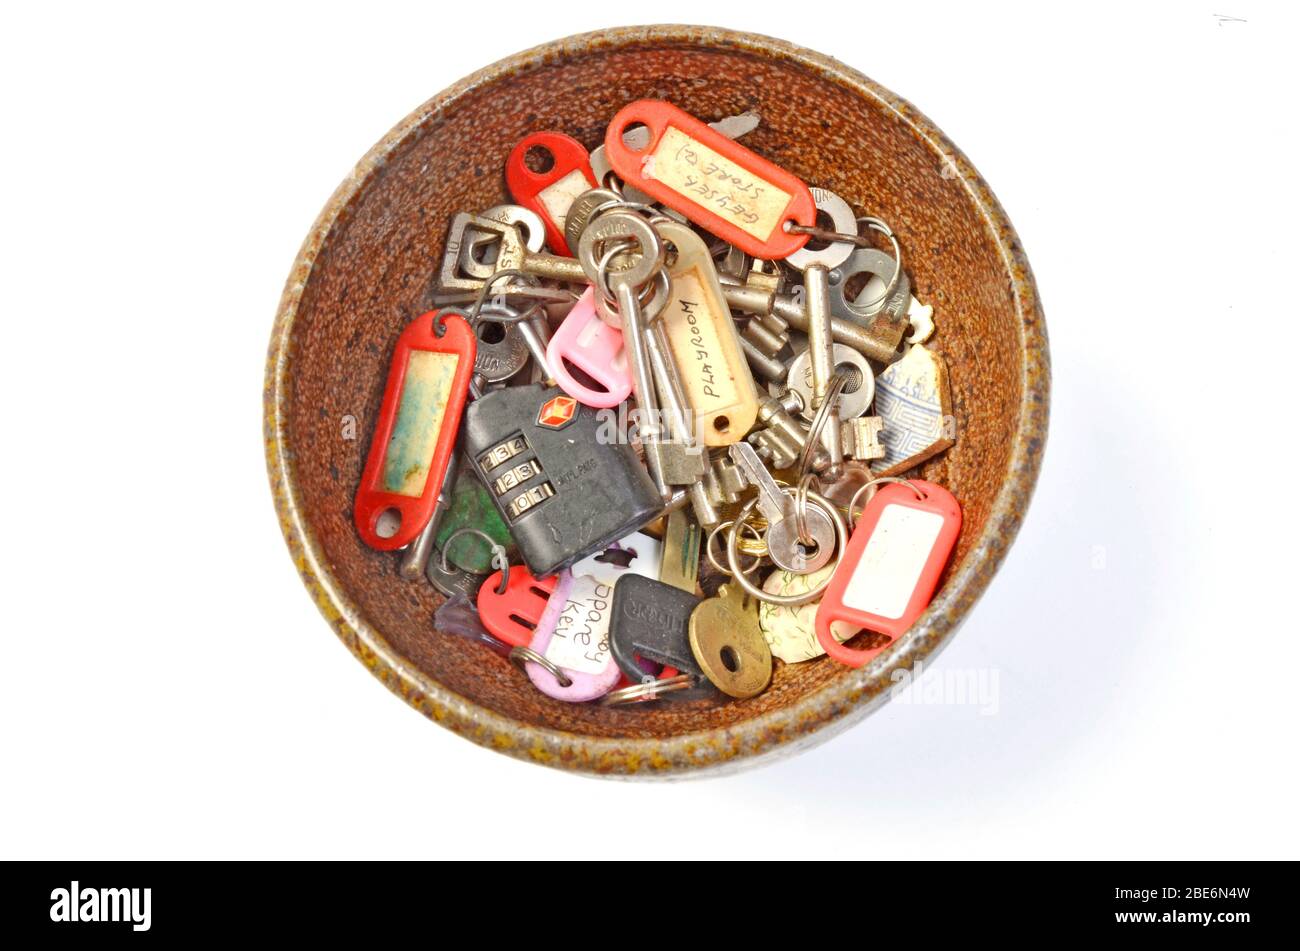 colección de llaves viejas del hogar y bric a brac Foto de stock